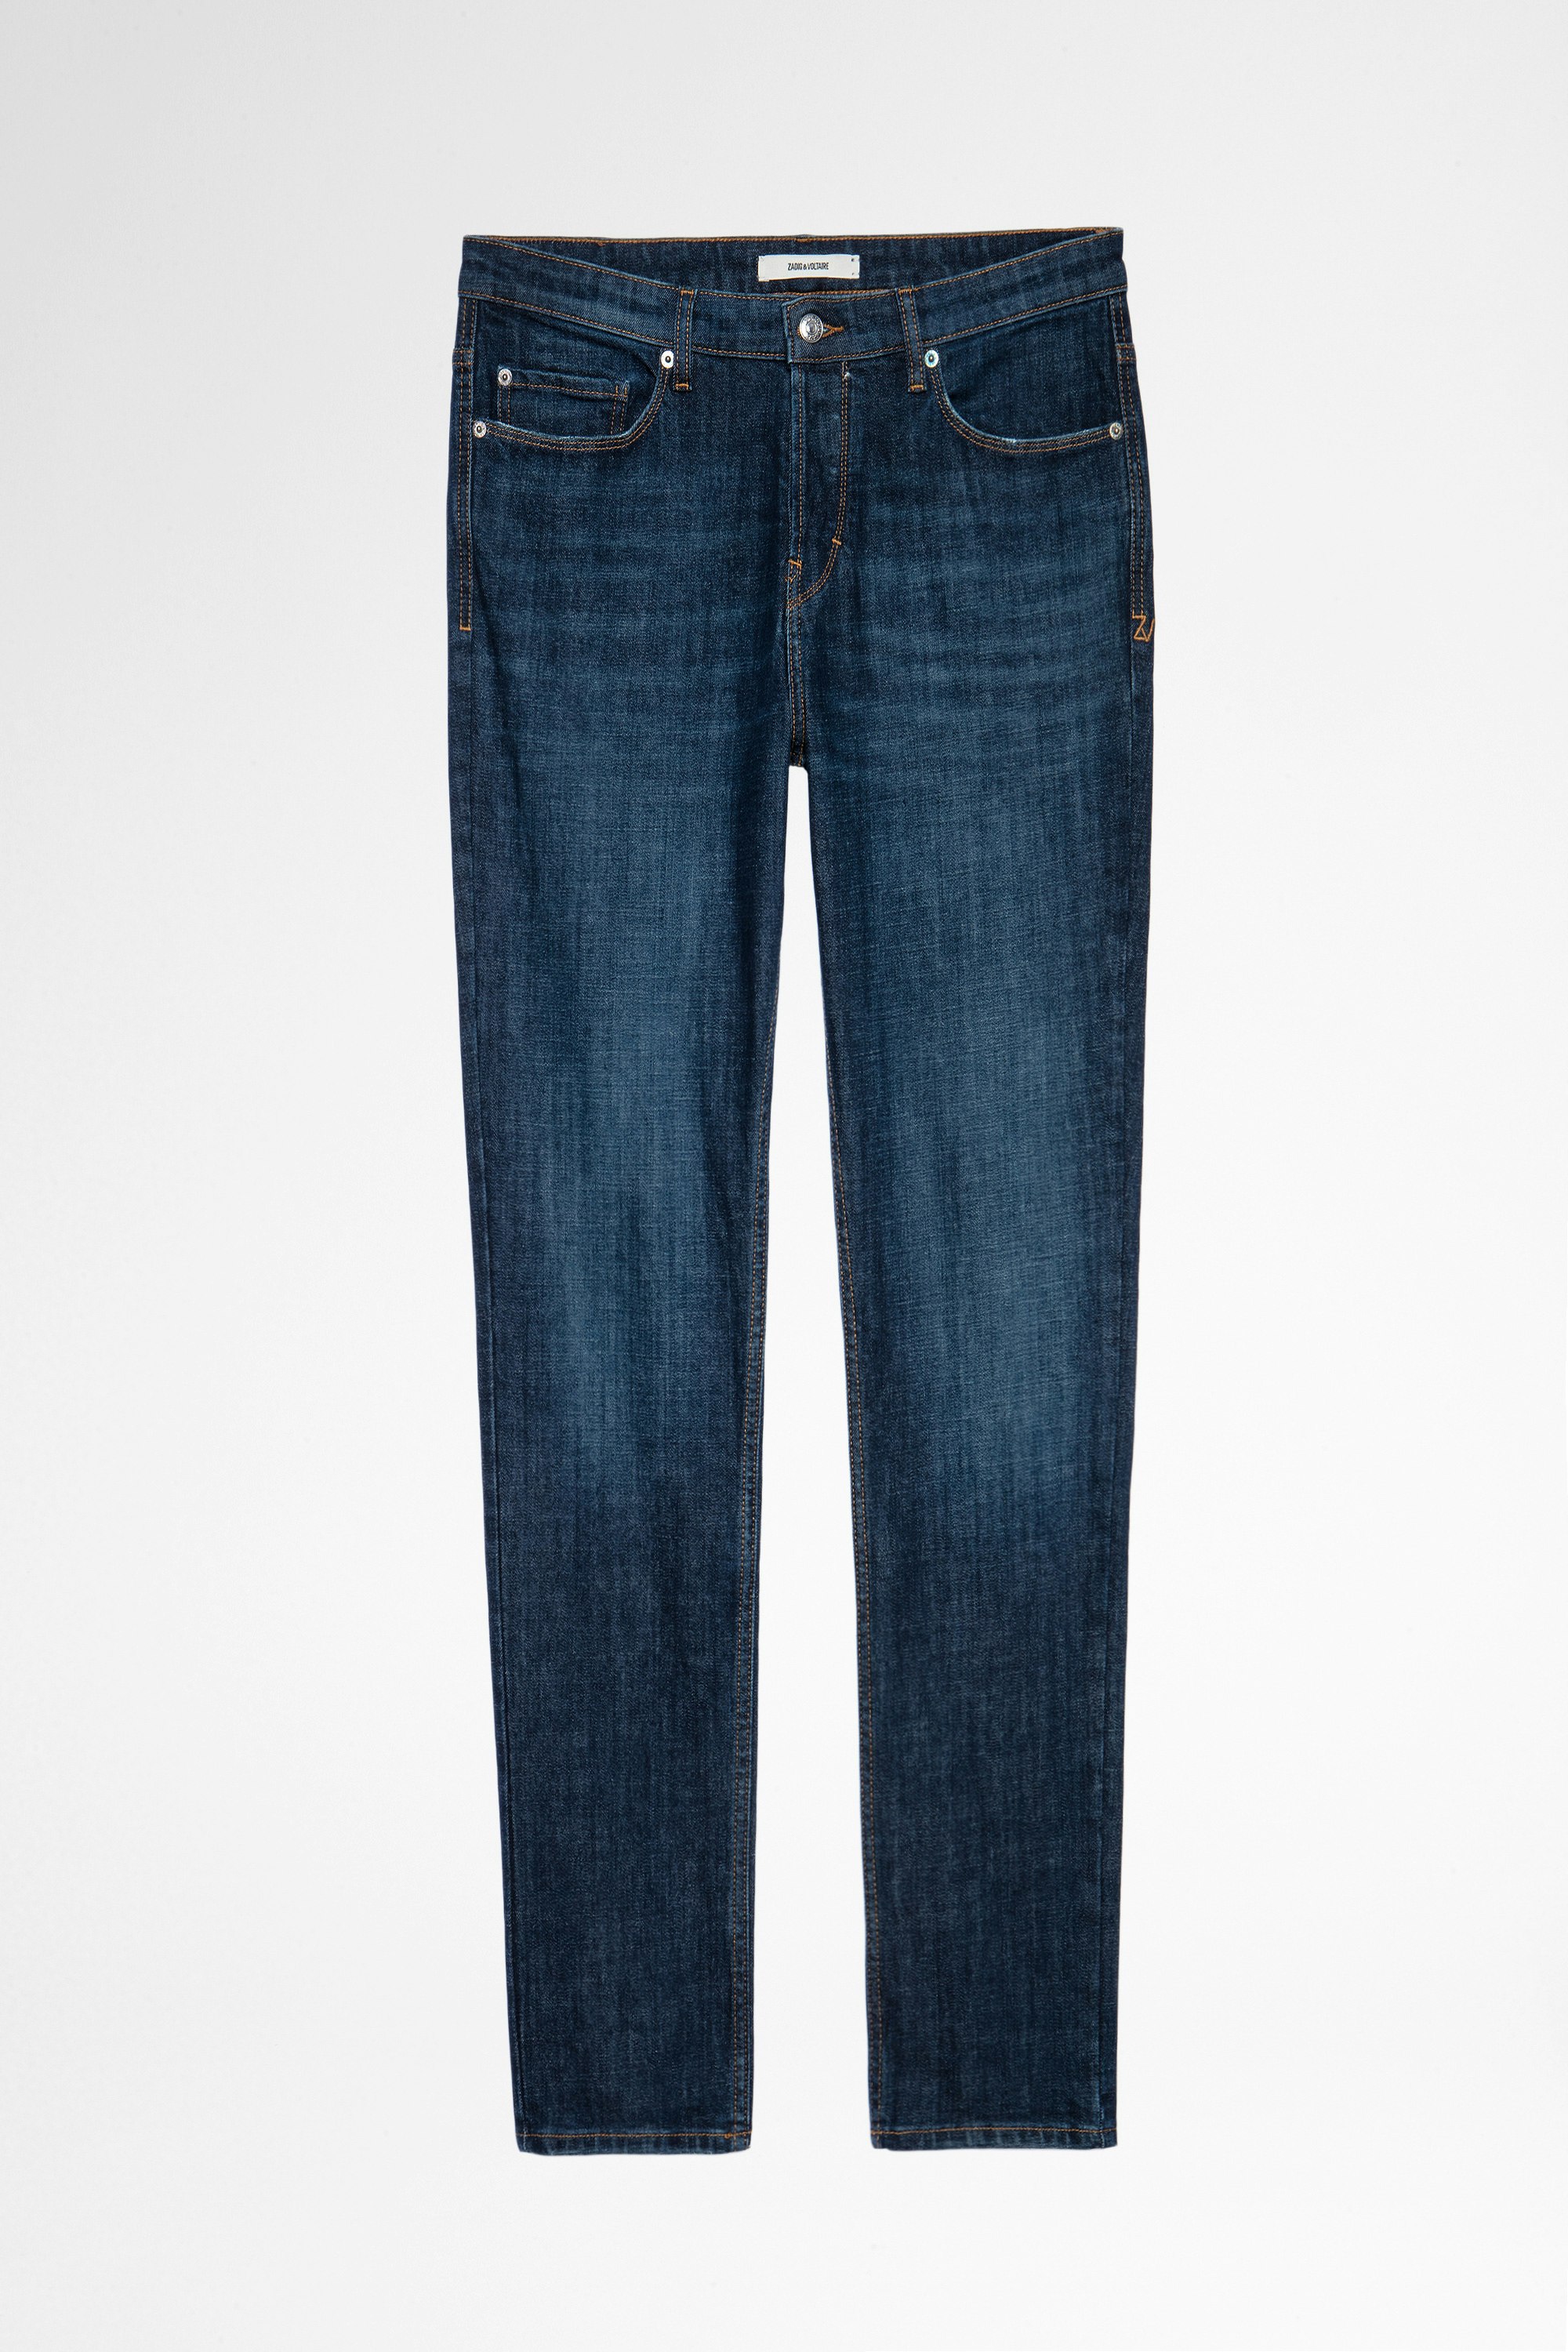 David Eco Brut Jeans Men's raw blue jeans